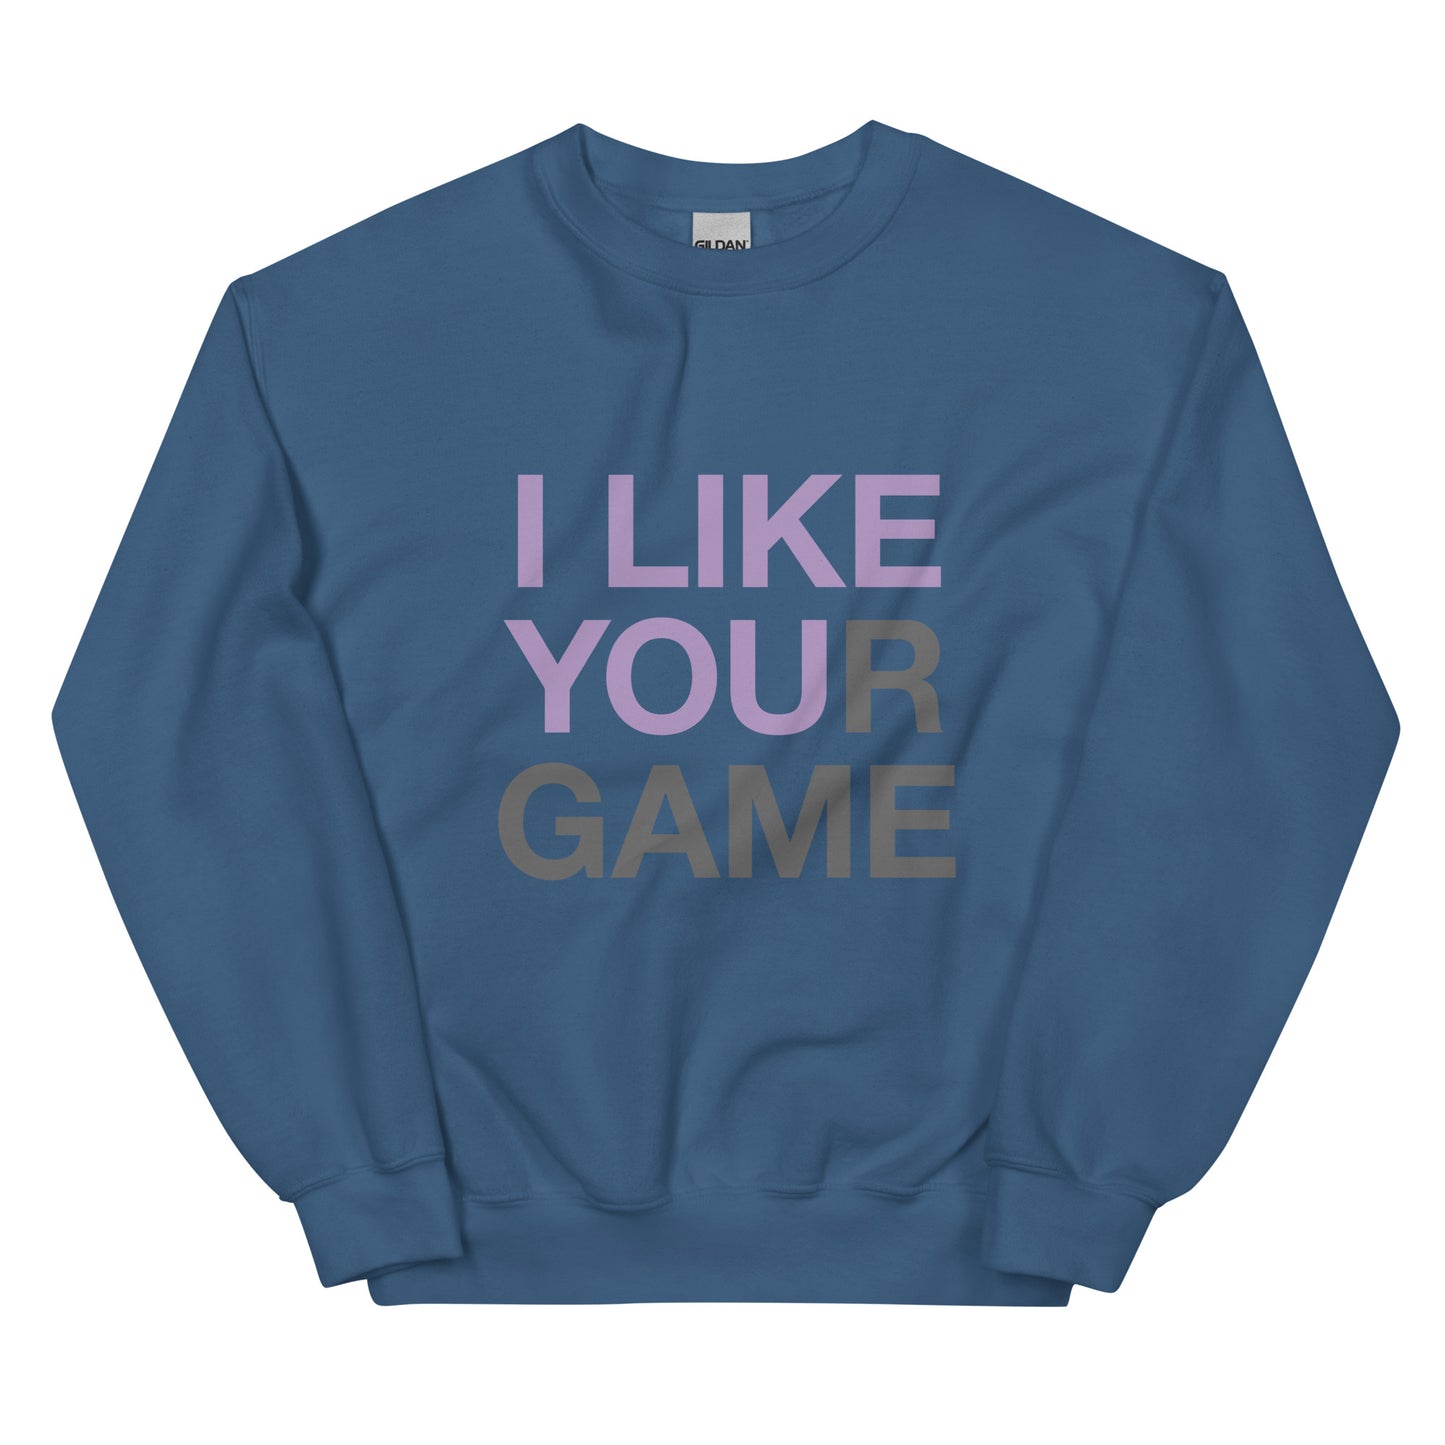 I LIKE YOUR GAME Unisex Sweatshirt